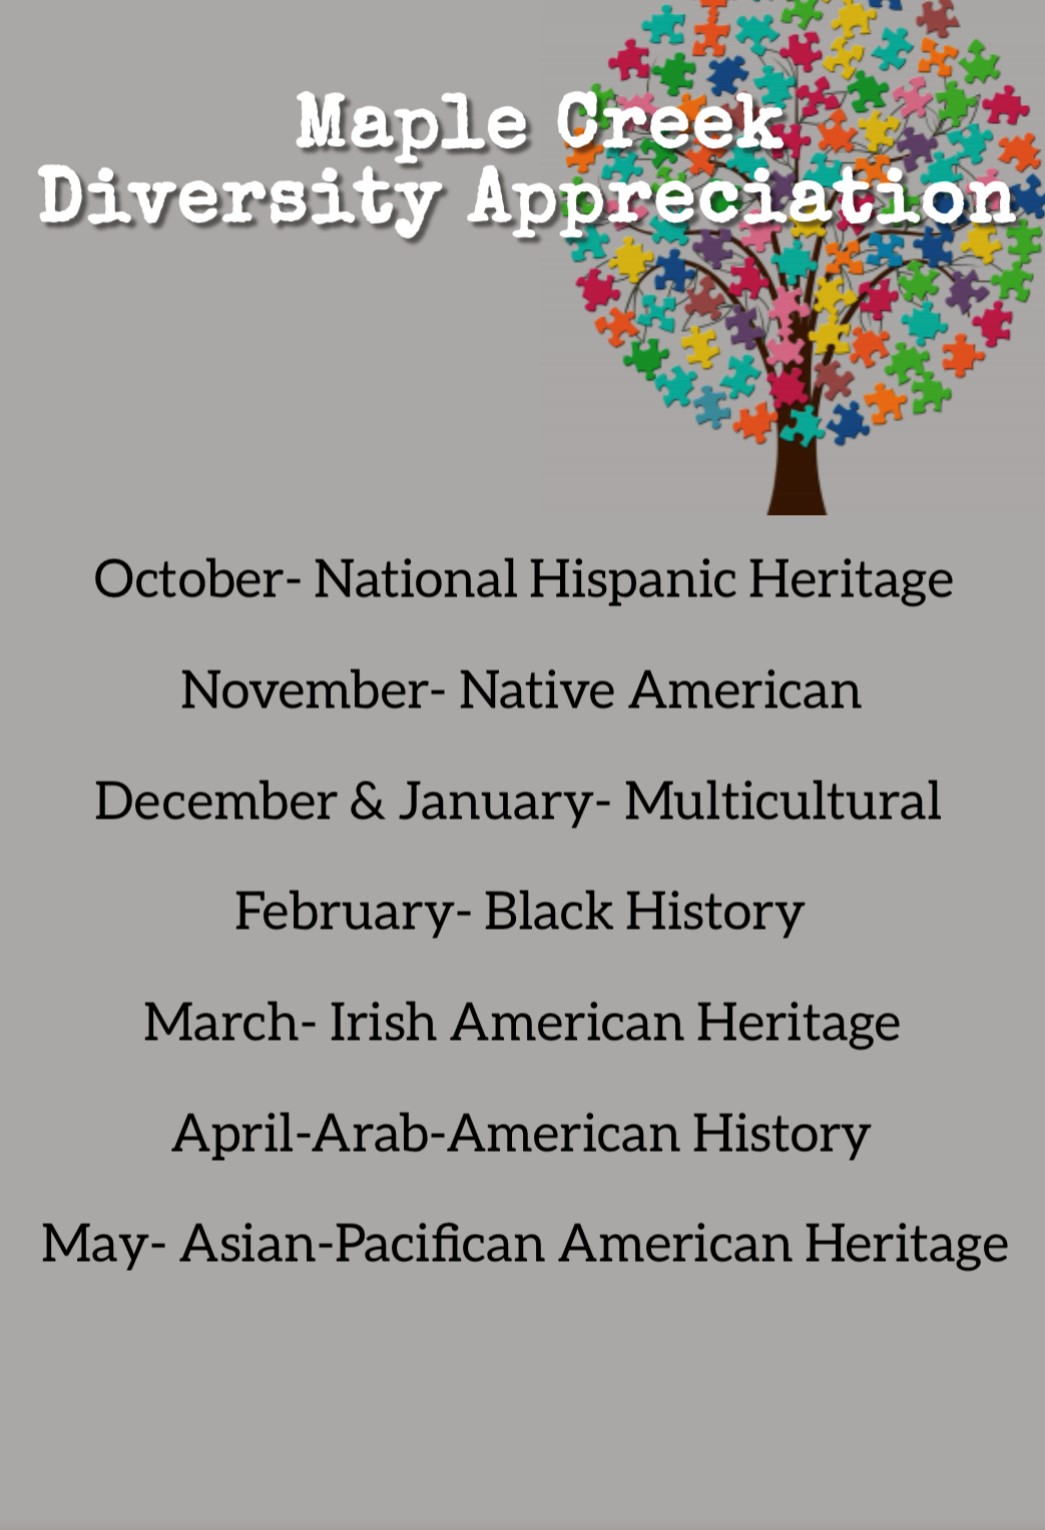 IDAC monthly schedule of diversity focus